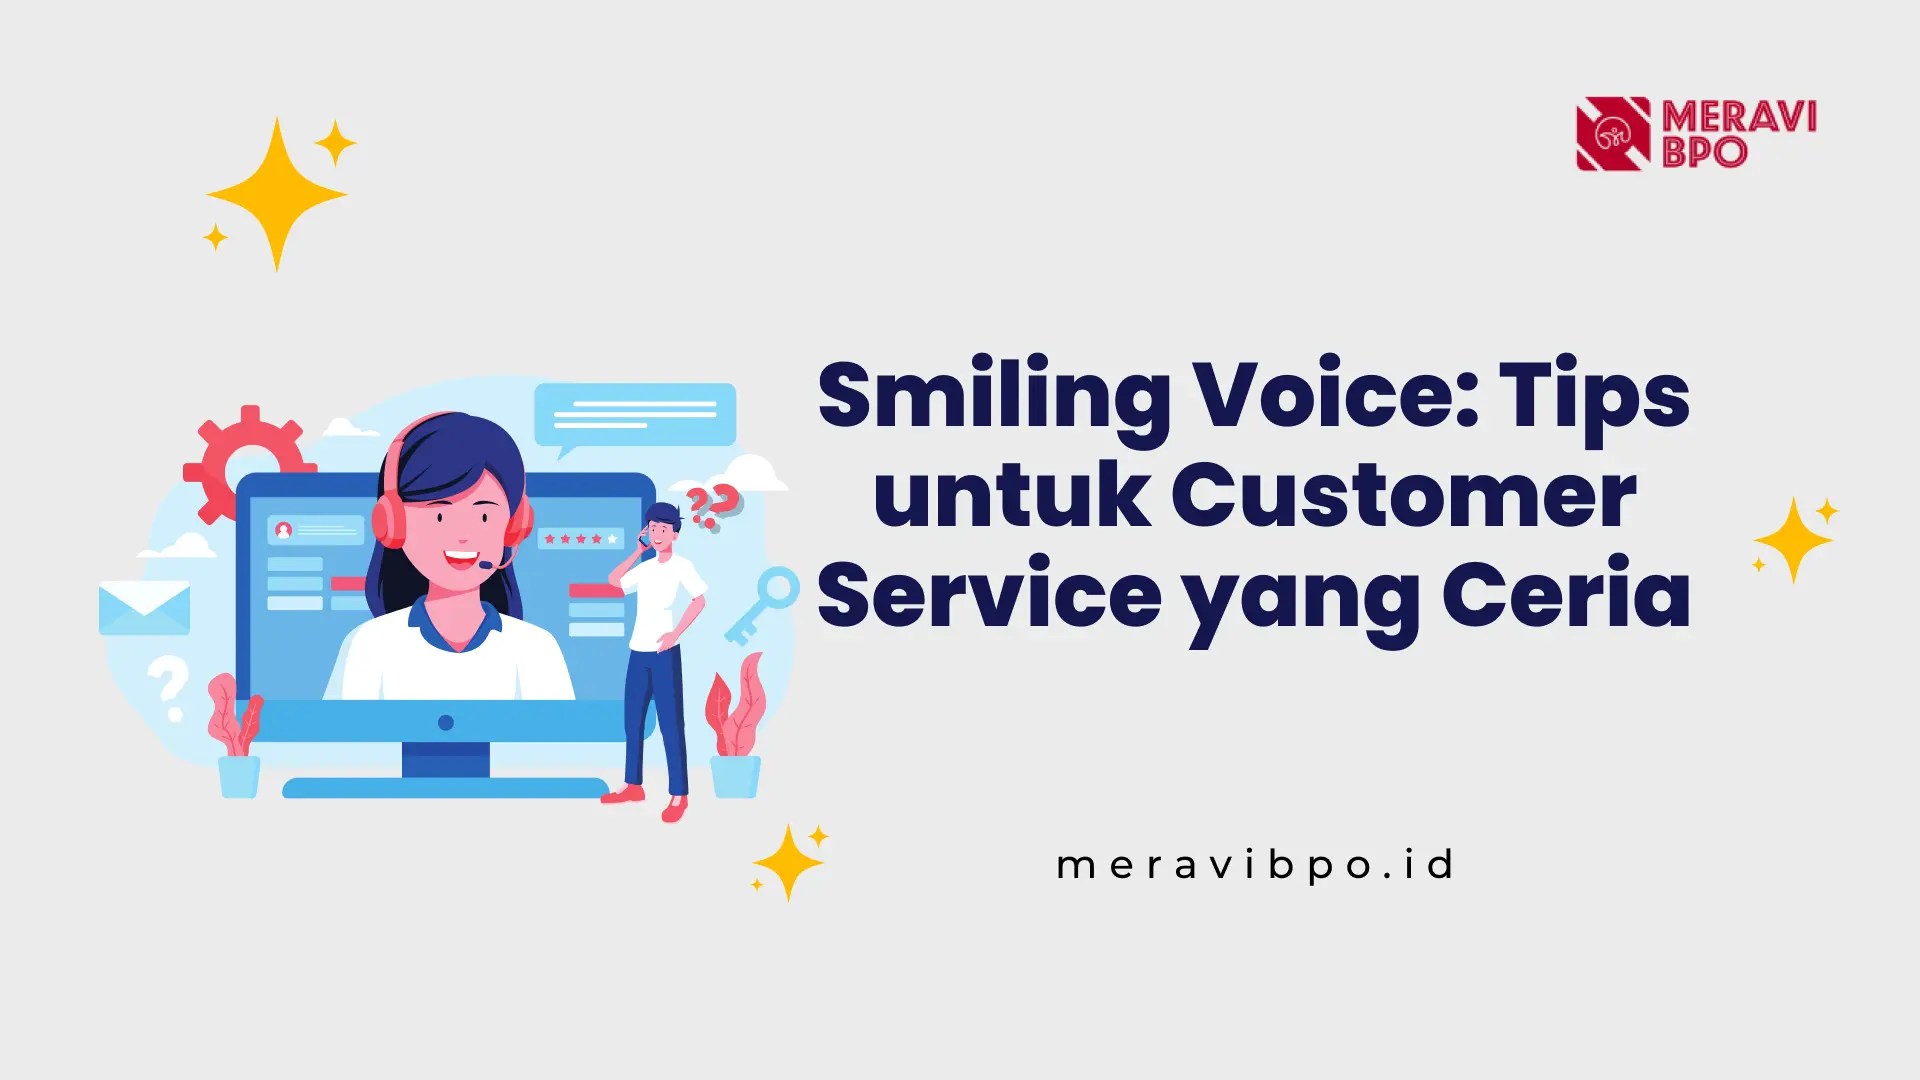 Smiling Voice: Tips untuk Customer Service yang Ceria